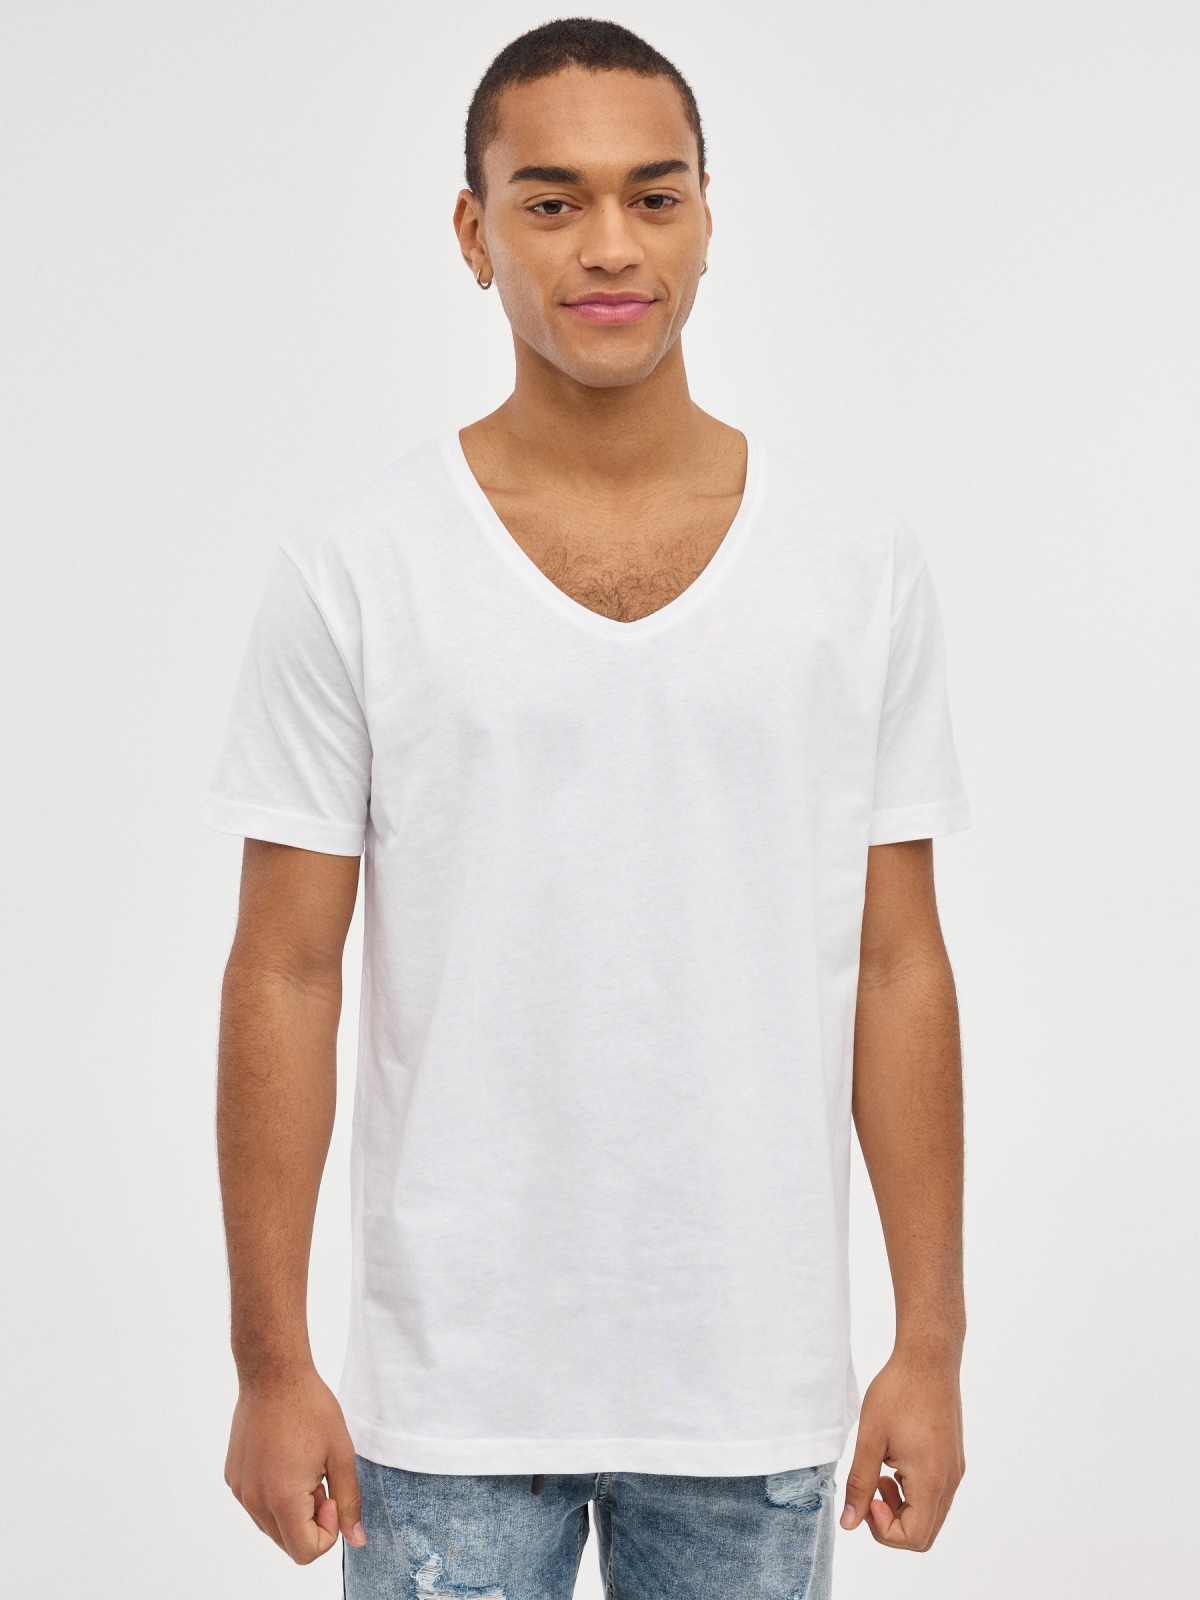 Camiseta básica cuello pico blanco vista media frontal